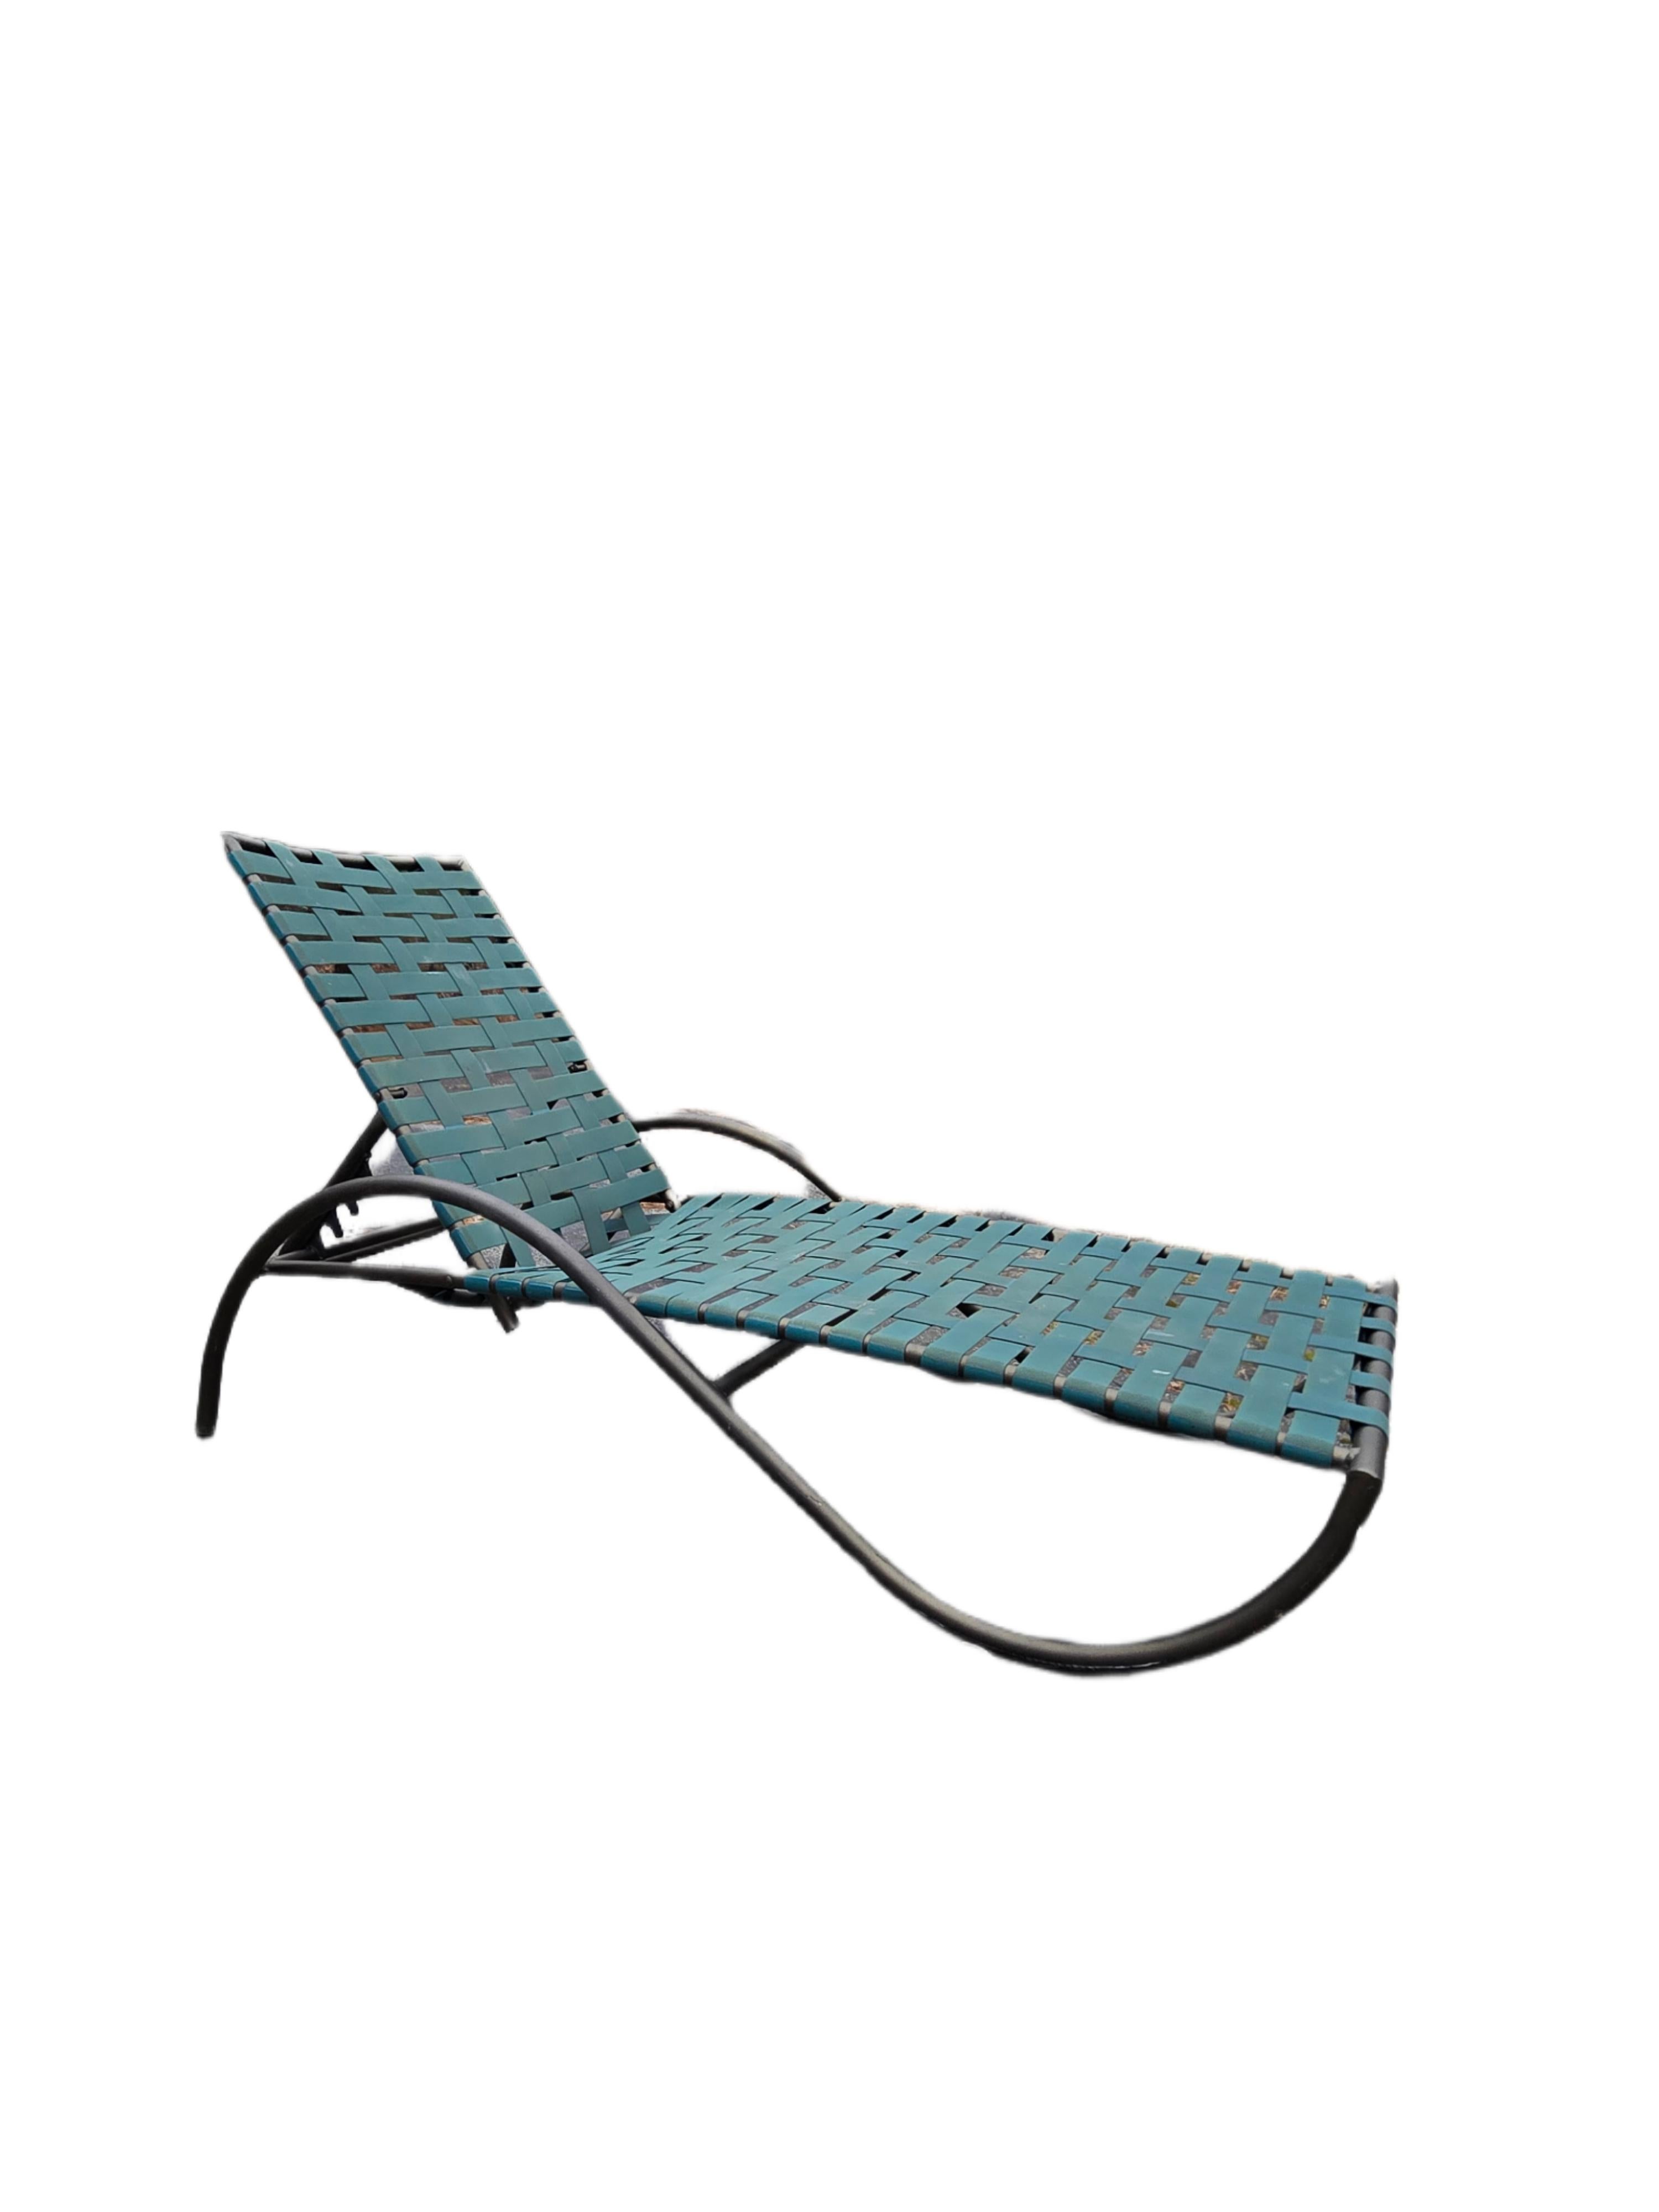 Brown Jordan's Vinyl Strapped Lattice Style Outdoor Patio Chaise Lounge Chairs sind perfekt für den Pool, die Terrasse oder das Deck. Dieses komplette 8er-Set bietet Ihnen viele Möglichkeiten für Arrangements je nach Ihrem Unterhaltungsbedarf. Mit